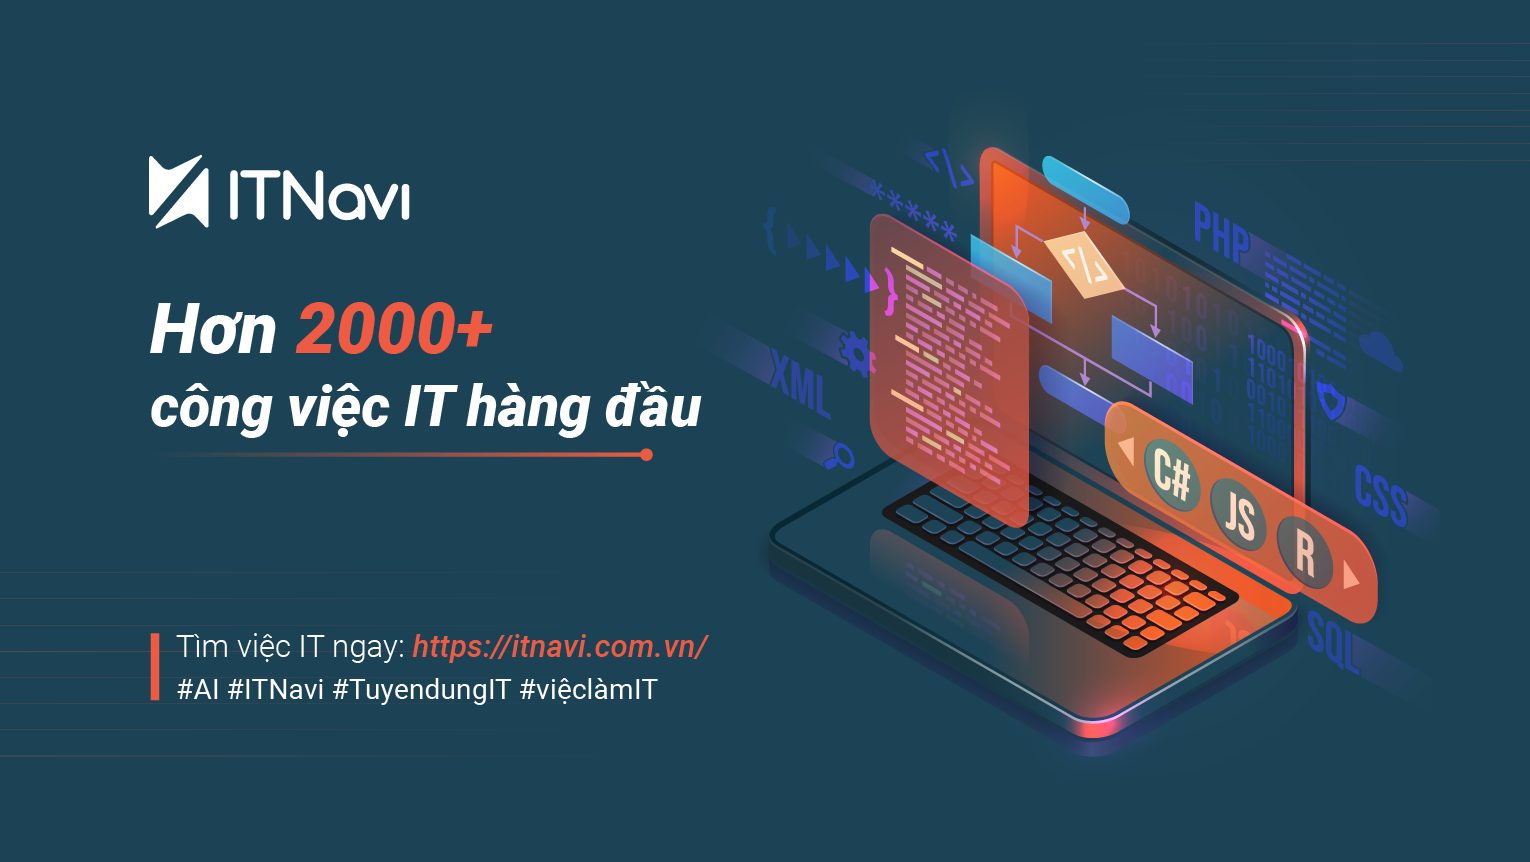 Top 10 trang web tuyển dụng hàng đầu tại Việt Nam được tìm kiếm nhiều nhất